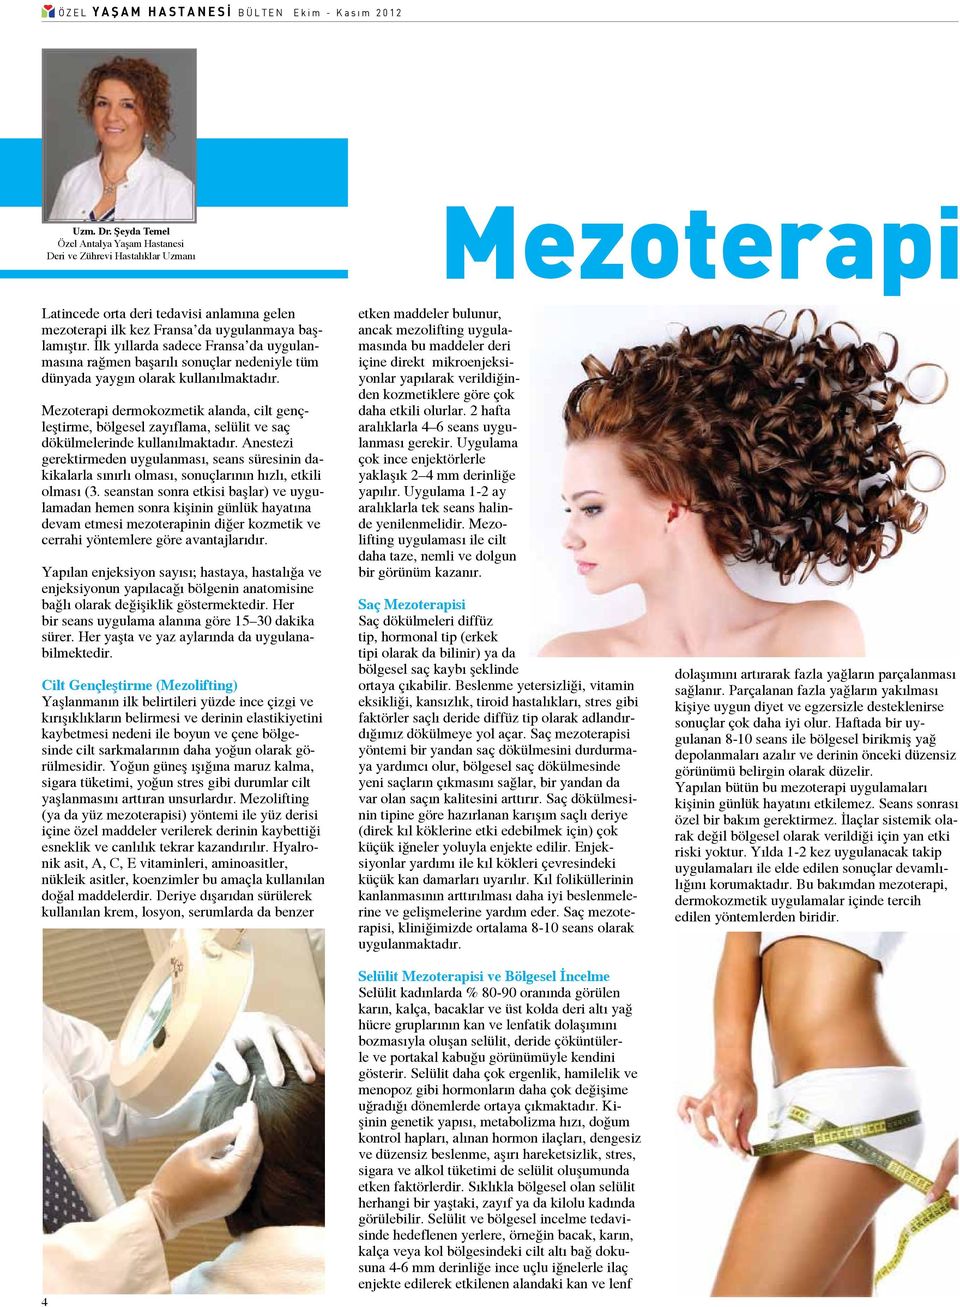 Mezoterapi dermokozmetik alanda, cilt gençleştirme, bölgesel zayıflama, selülit ve saç dökülmelerinde kullanılmaktadır.